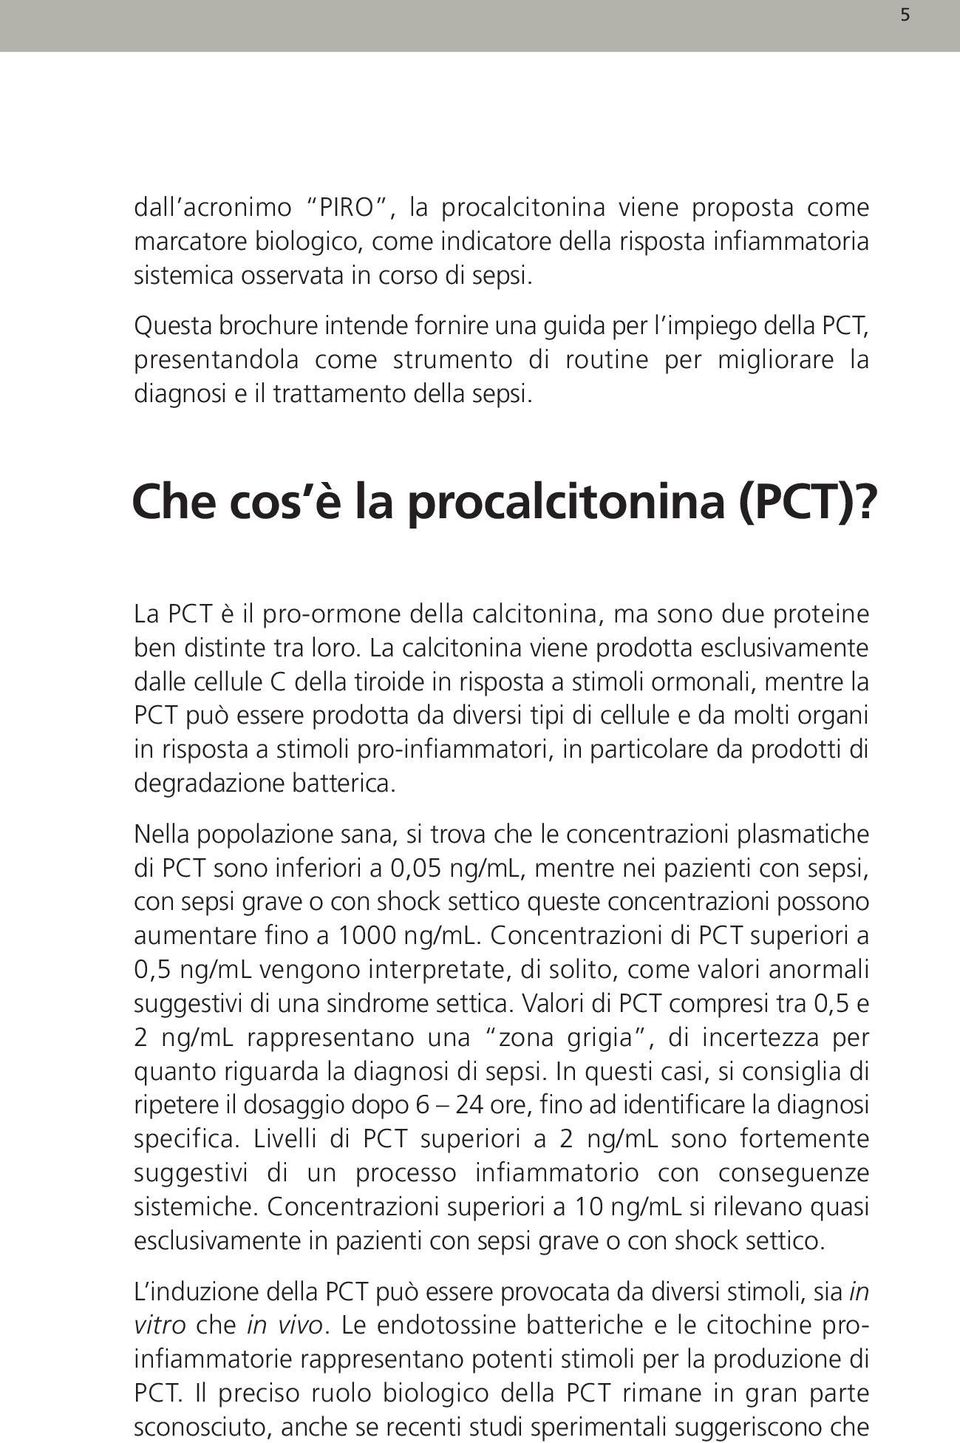 La PCT è il pro-ormone della calcitonina, ma sono due proteine ben distinte tra loro.